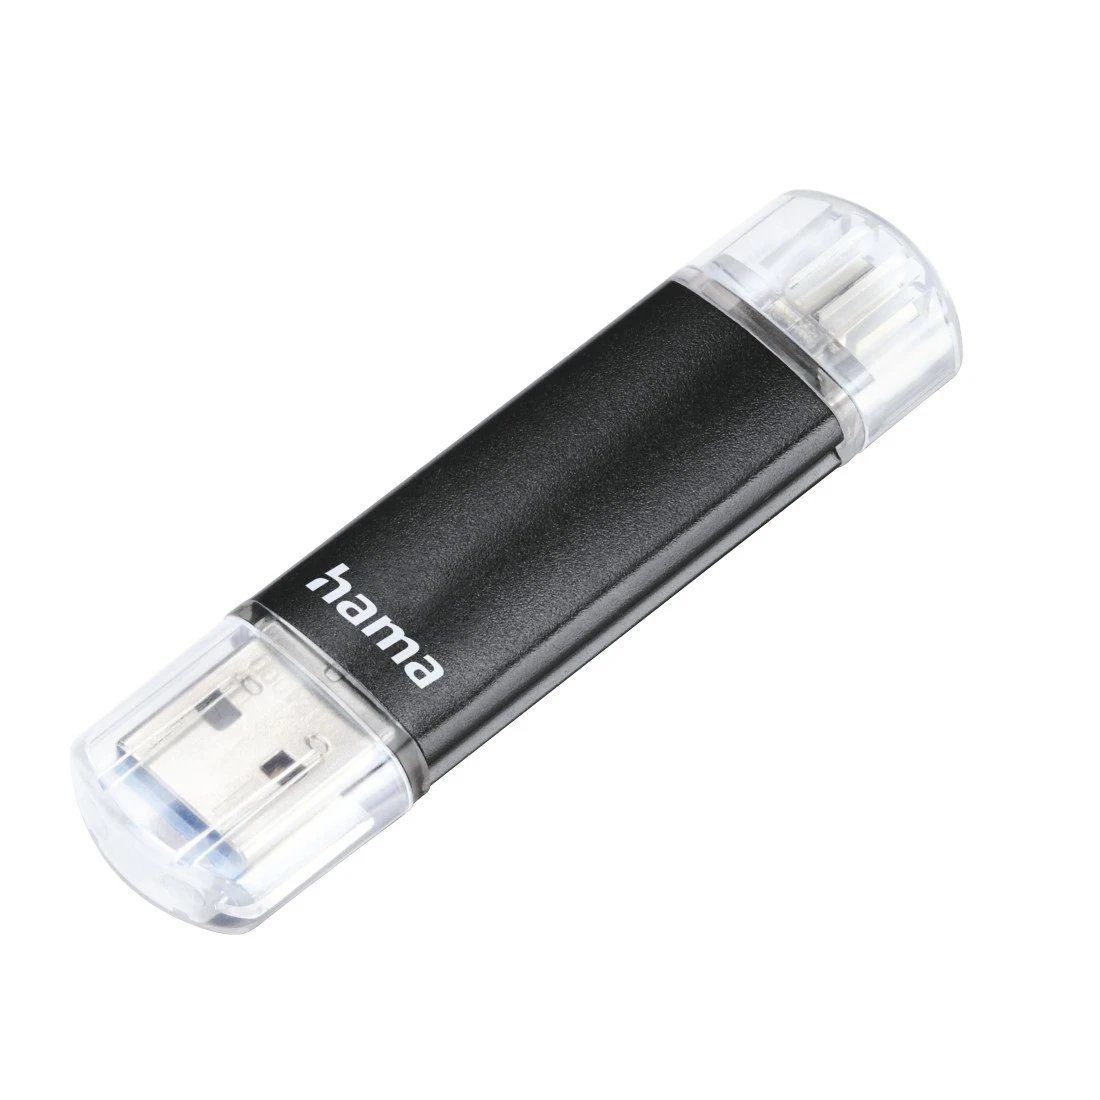 Clé USB 64 Go (noir) 3.0 Clé USB Photo Stick Thumb Drive Clé USB